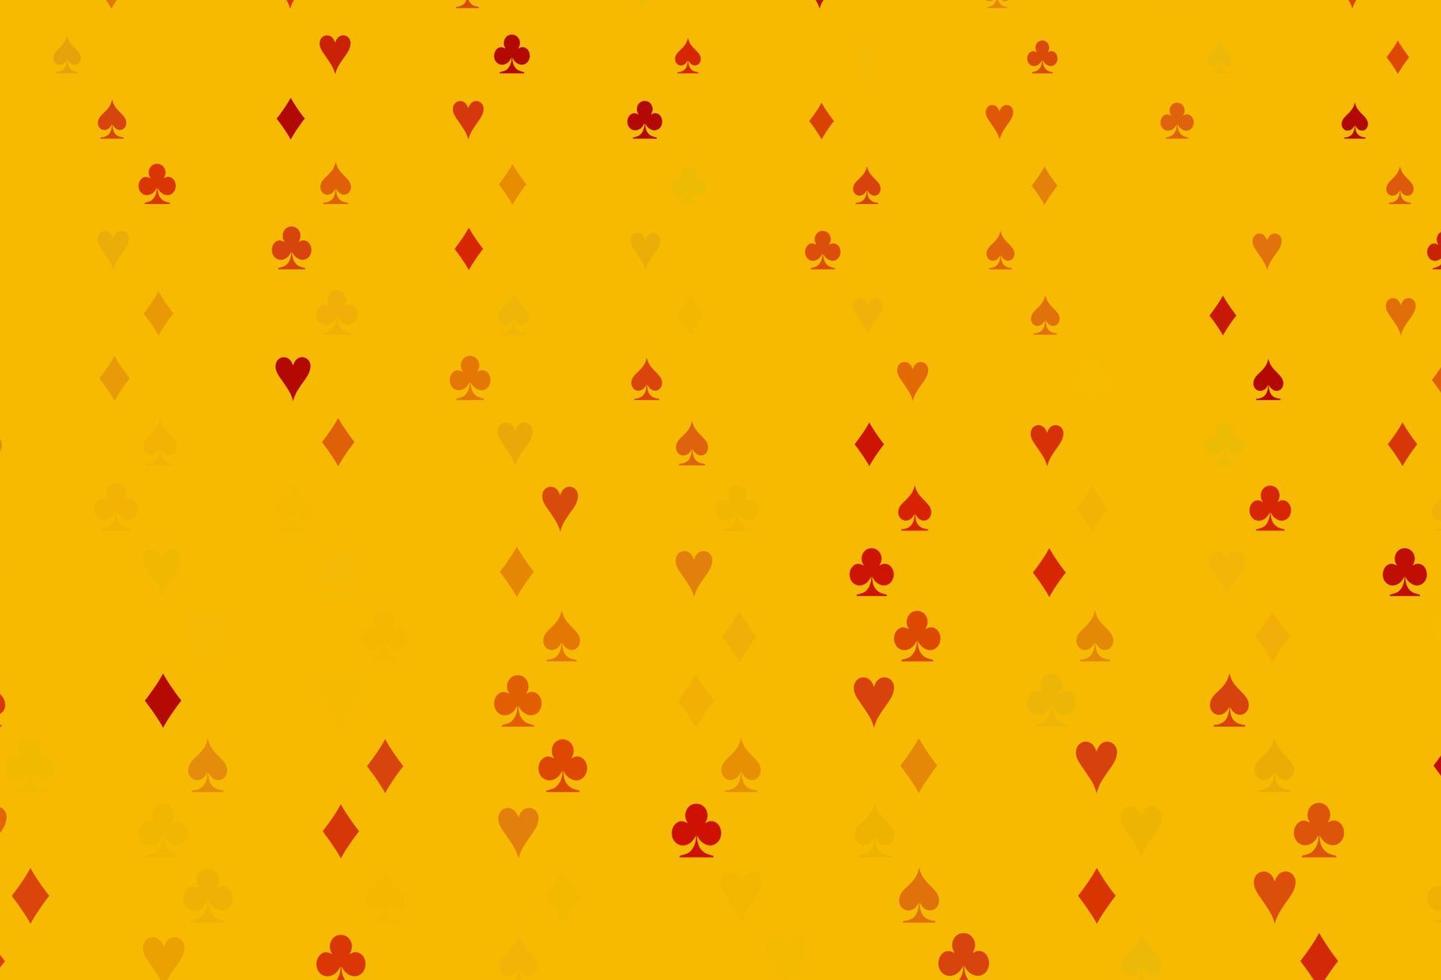 Plantilla de vector naranja claro con símbolos de póquer.